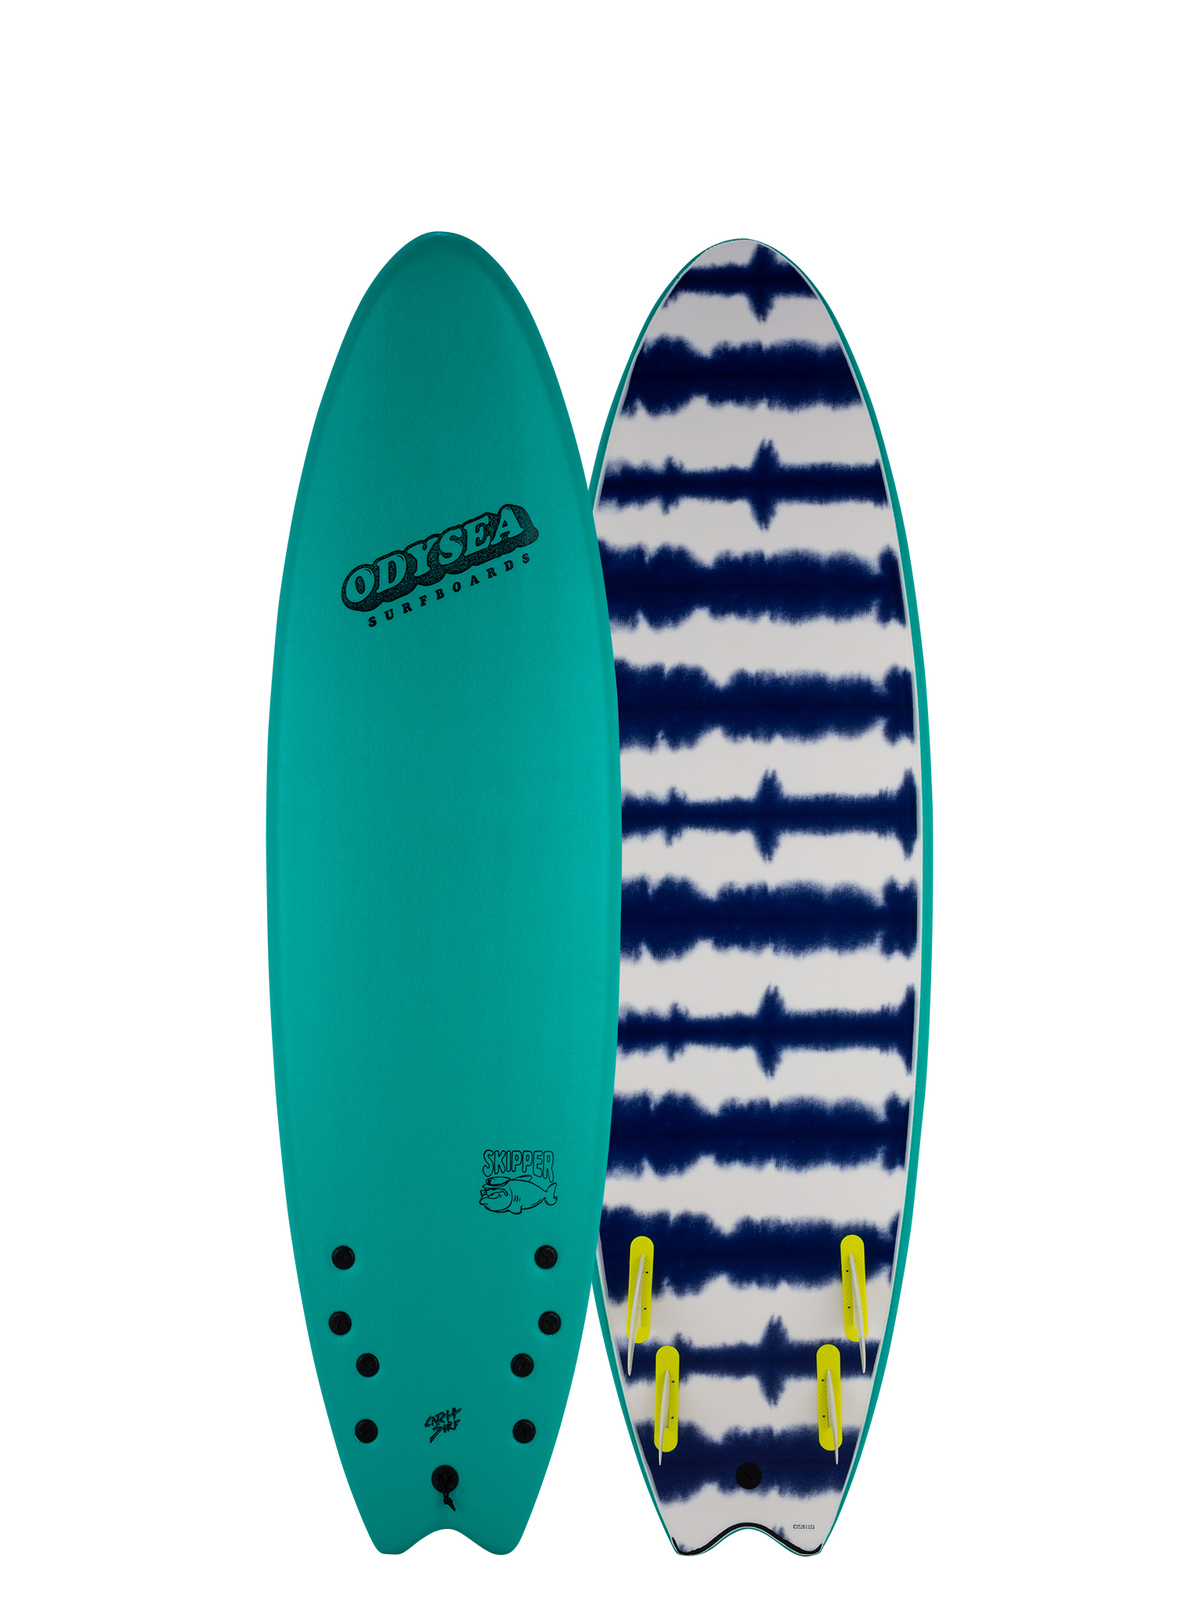 最適な価格 CATCH SURF ODYSEA SKIPPER 6'6 QUAD